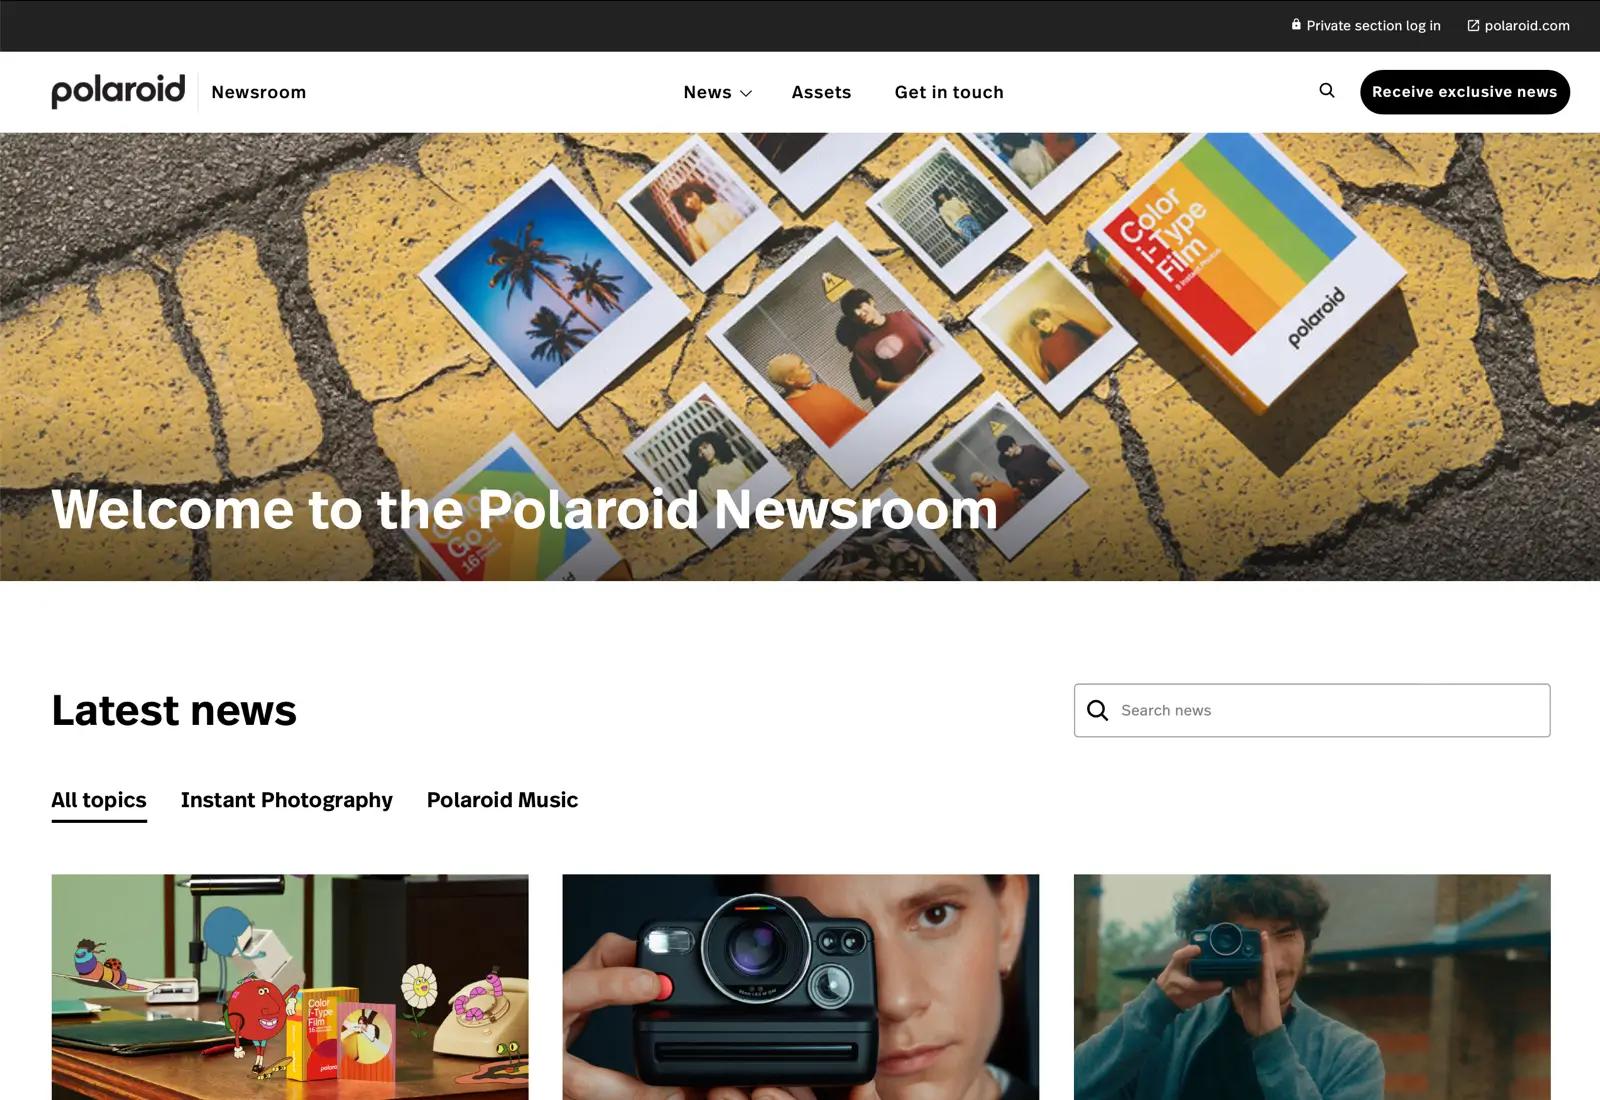 polaroid-newsroom-03